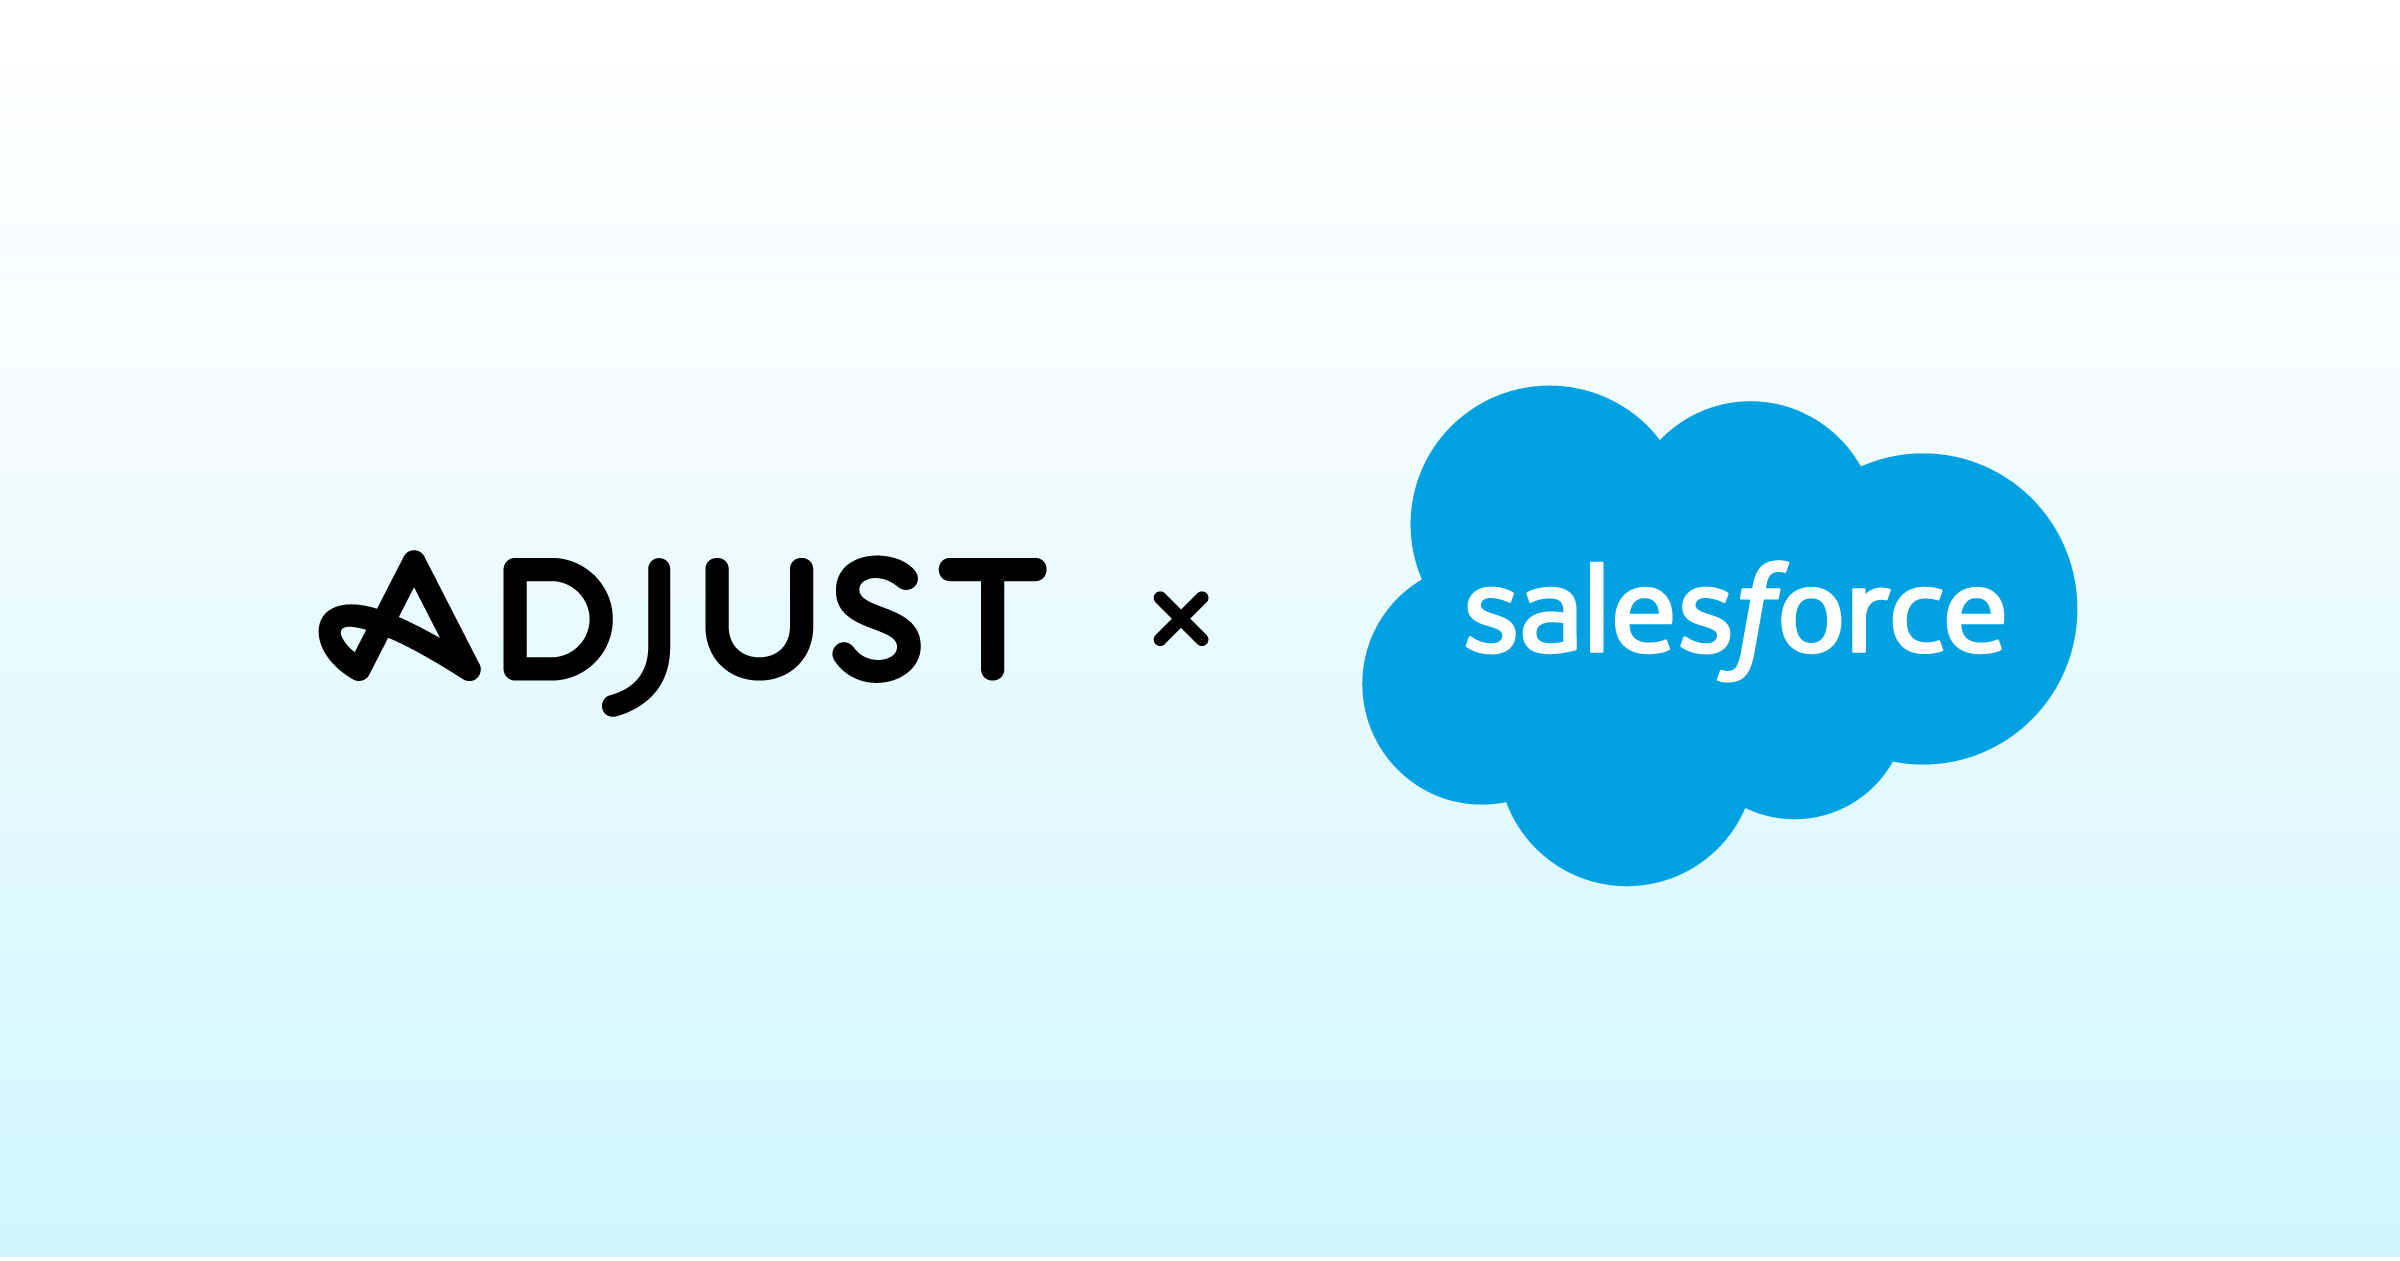 Adjust hợp tác với Salesforce Marketing Cloud trên Salesforce AppExchange, thị trường ứng dụng trên đám mây hàng đầu thế giới dành cho doanh nghiệp